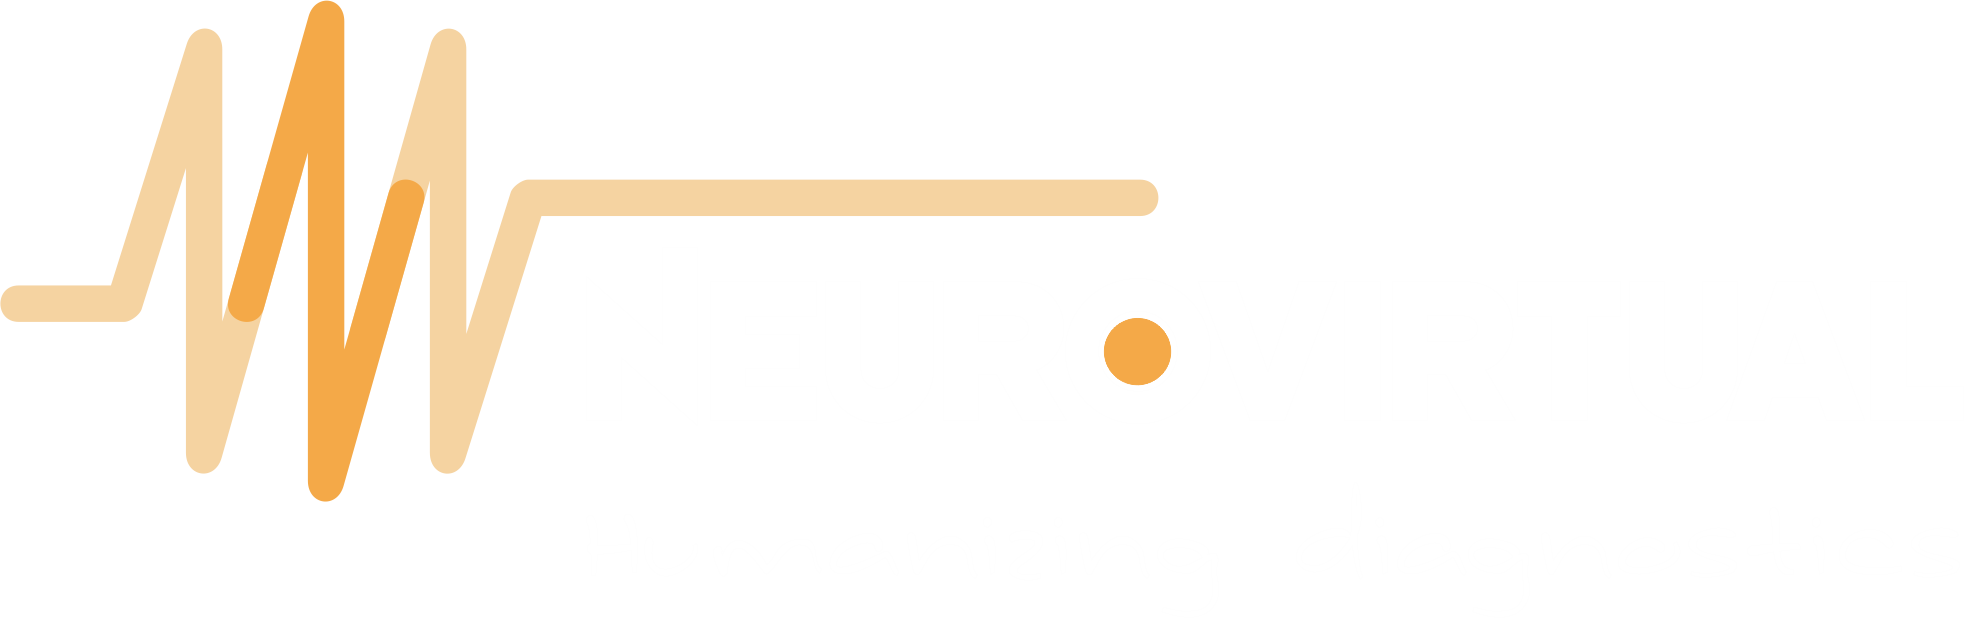 Neurovirtual